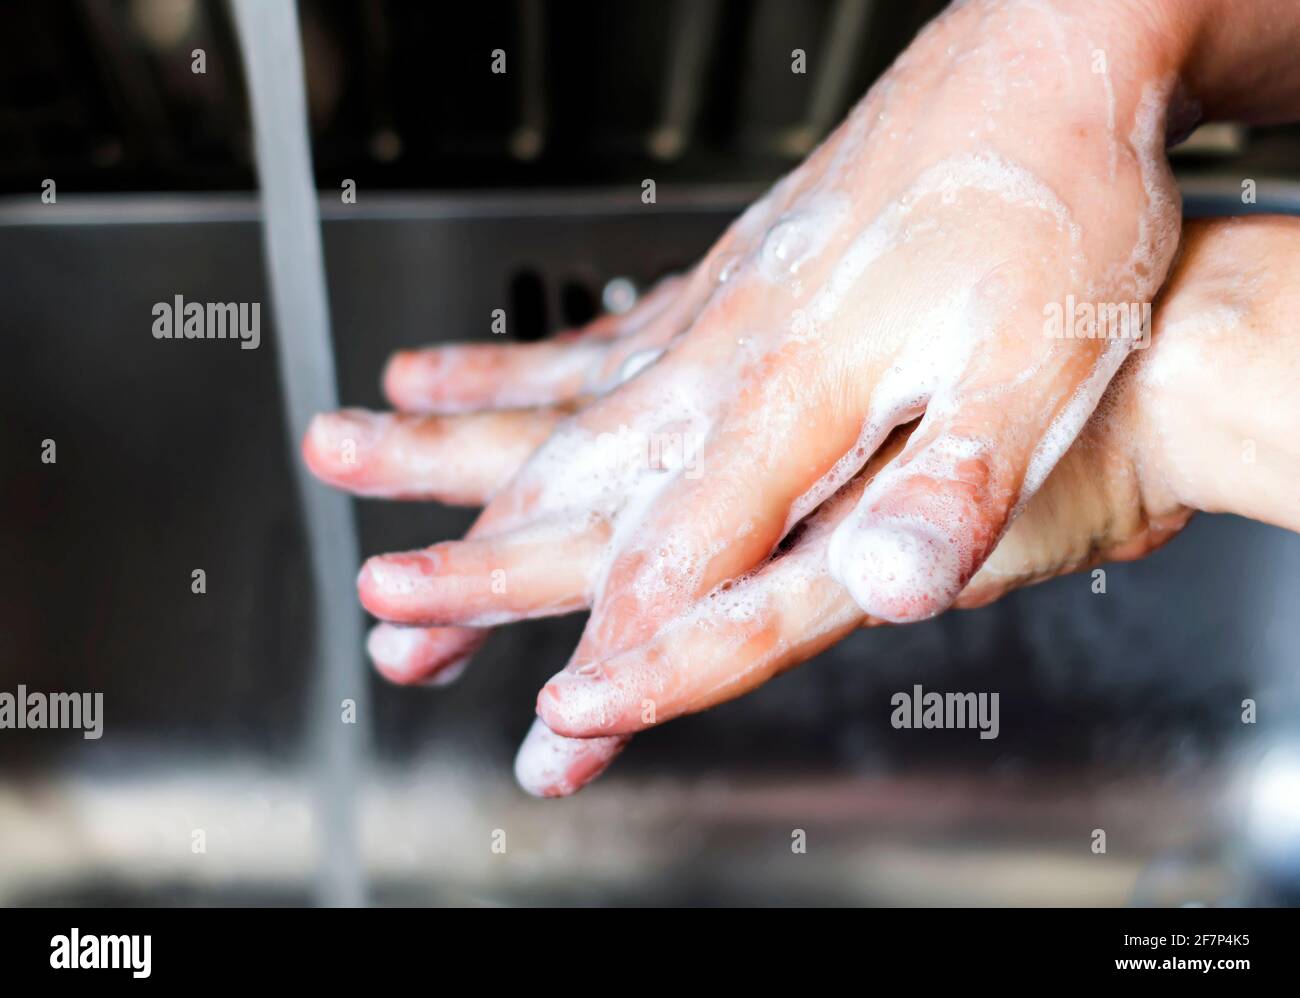 giovane donna caucasica che le lava le mani con sapone. Mano destra sopra la mano sinistra. Tenere le mani pulite. Cura personale Foto Stock